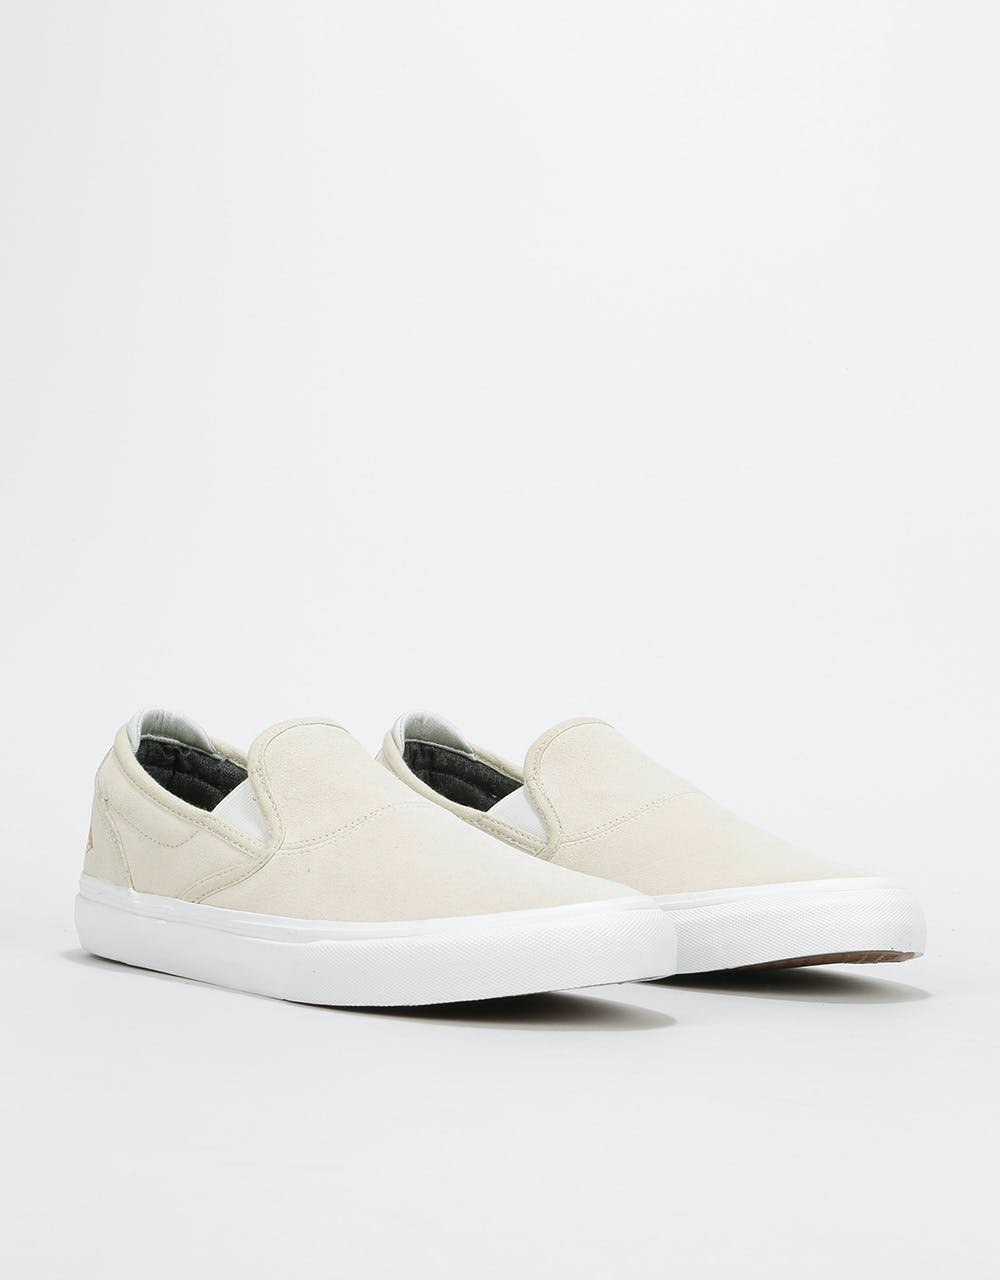 Emerica Wino G6 Slip-On Skate Shoes - White/White